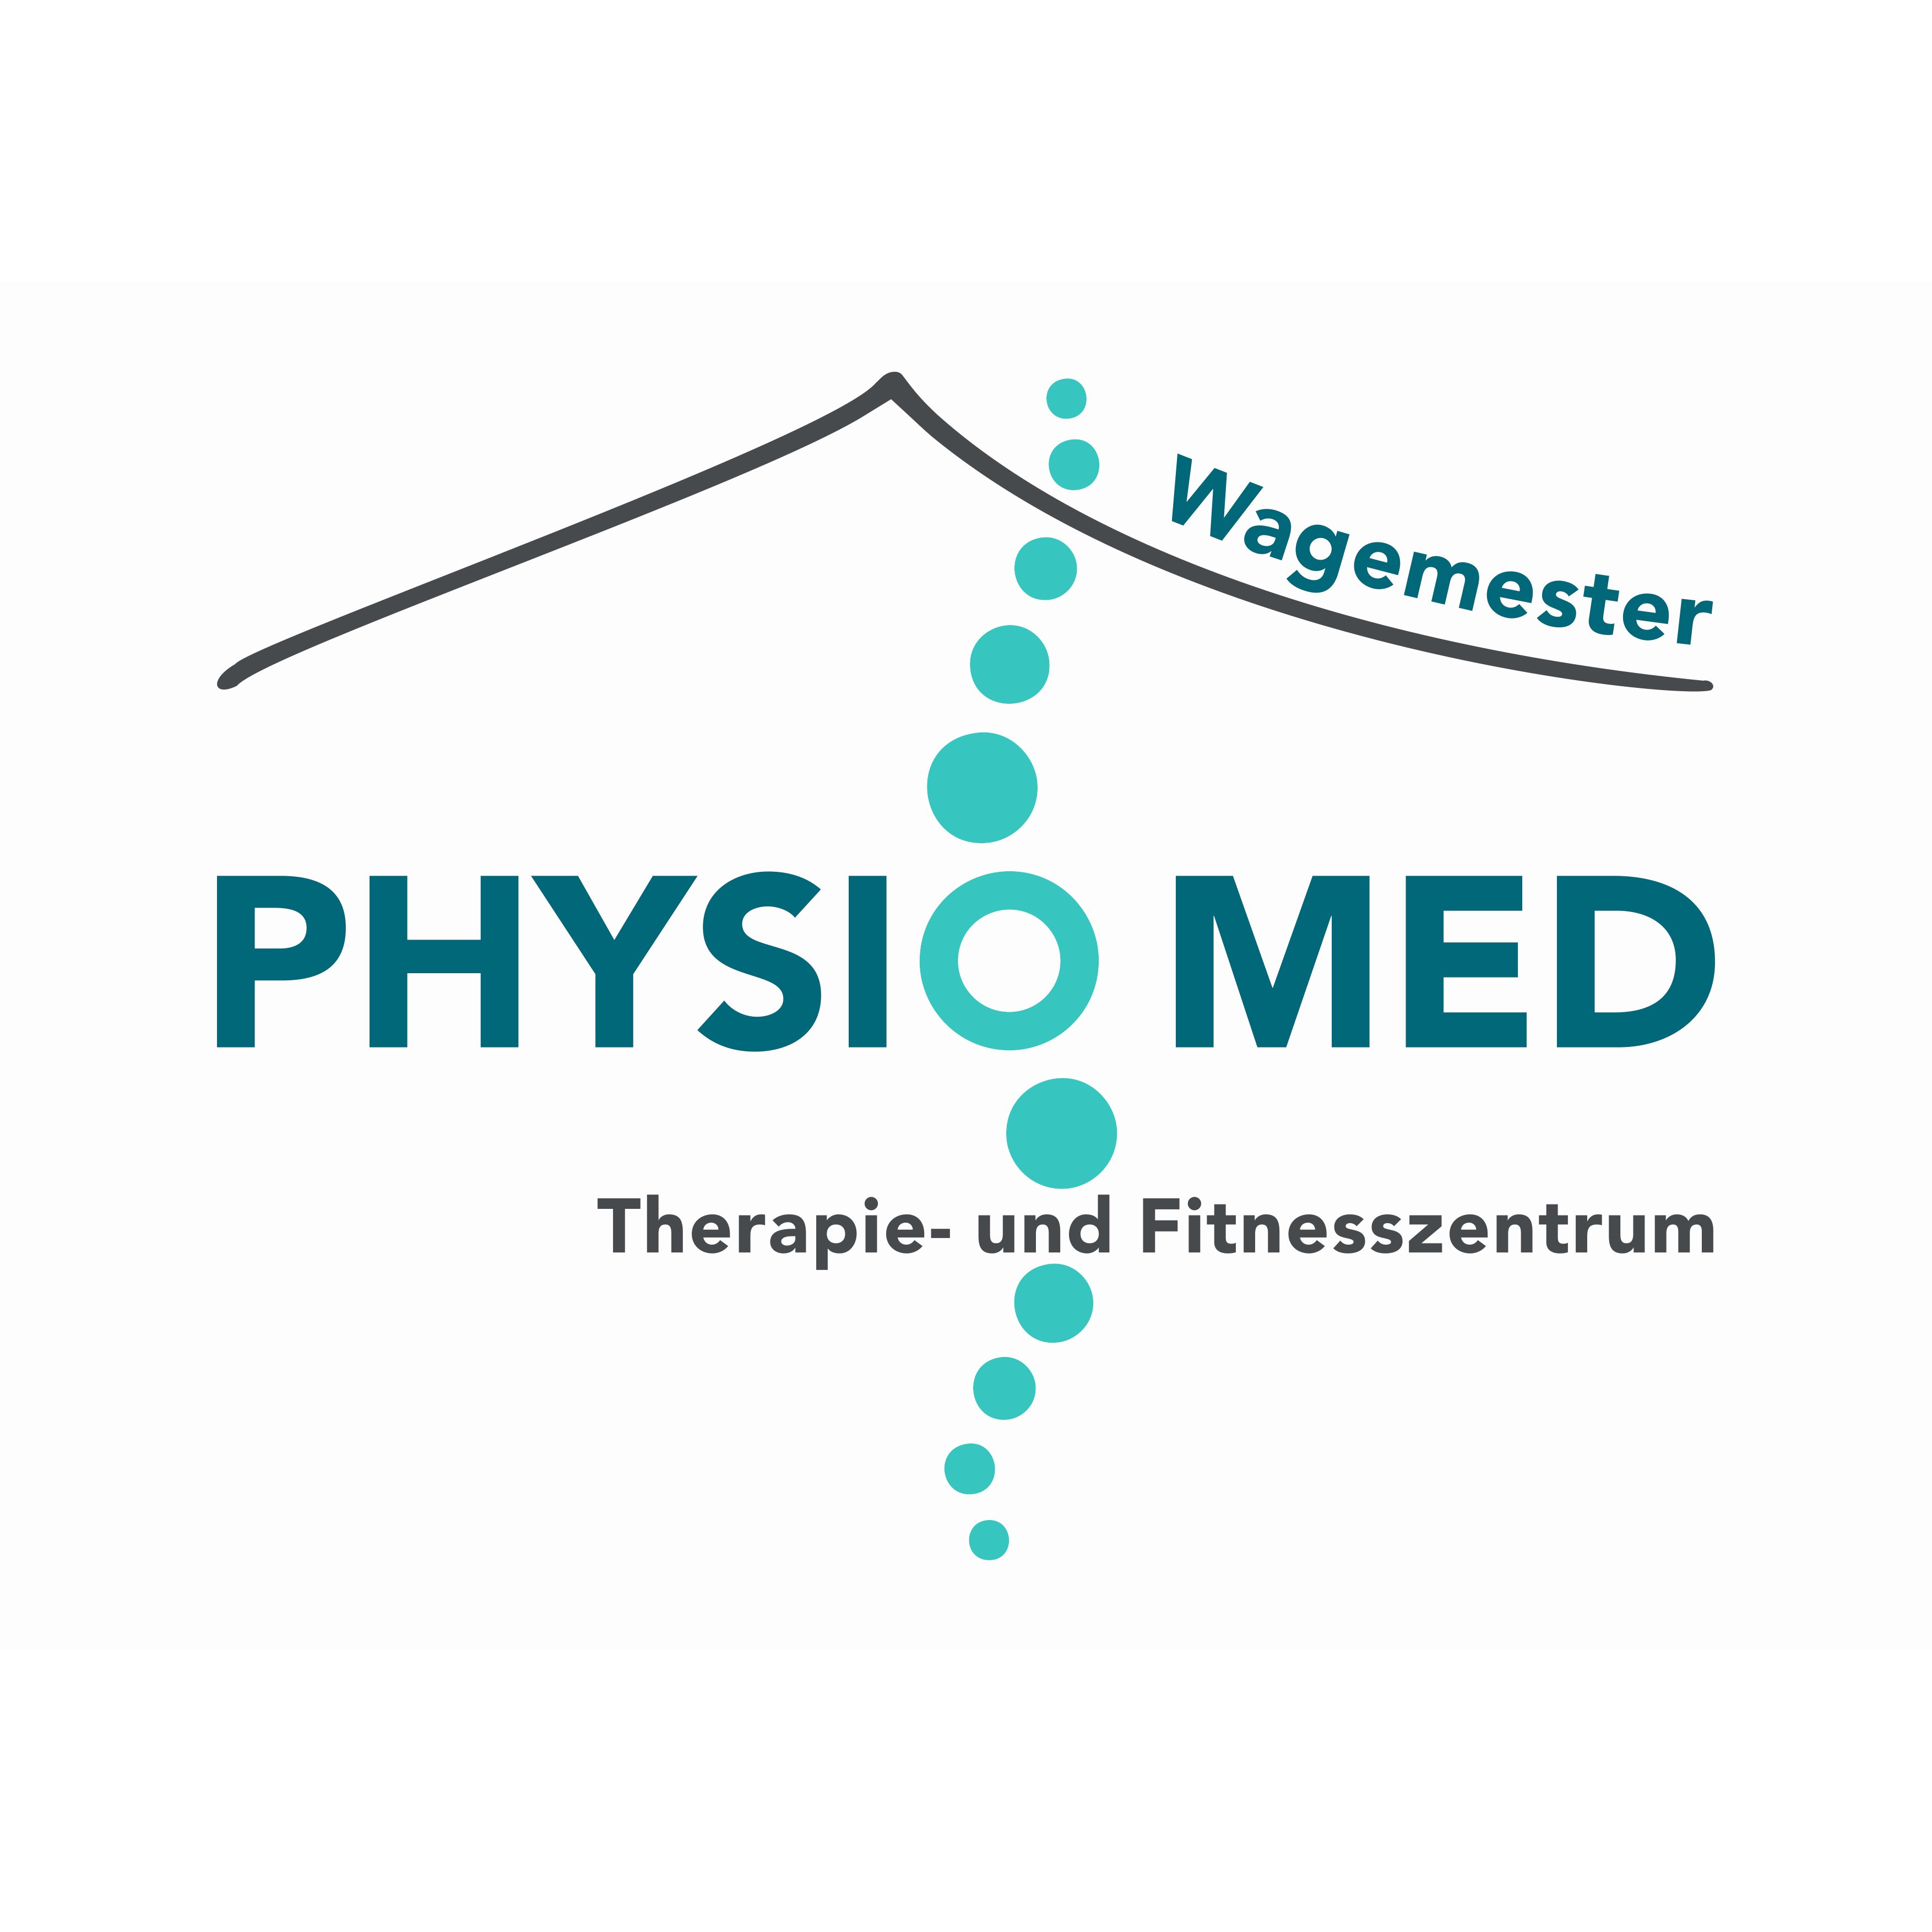 PhysioMed Wagemester Therapie- und Fitnesszentrum Linda Krone in Freren - Logo